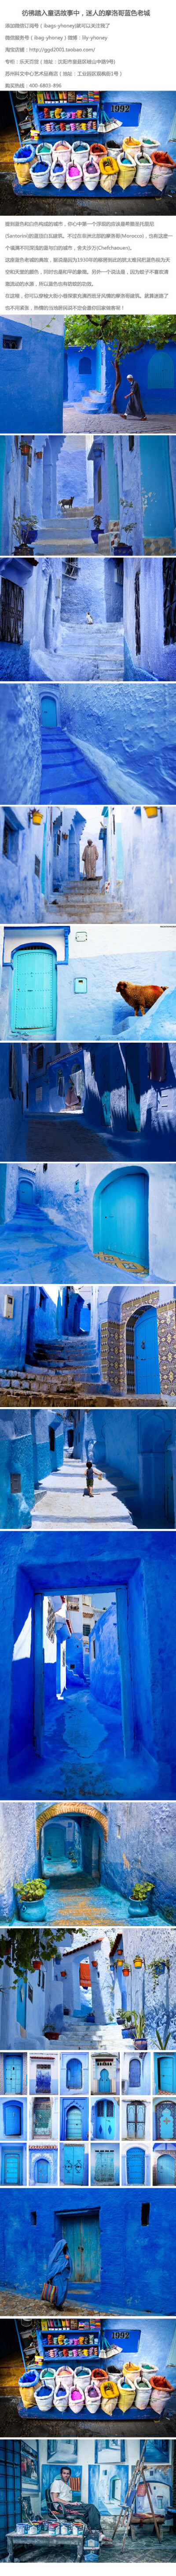 【Y honey旅行时尚手袋分享】彷彿踏入童话故事中，迷人的摩洛哥蓝色老城